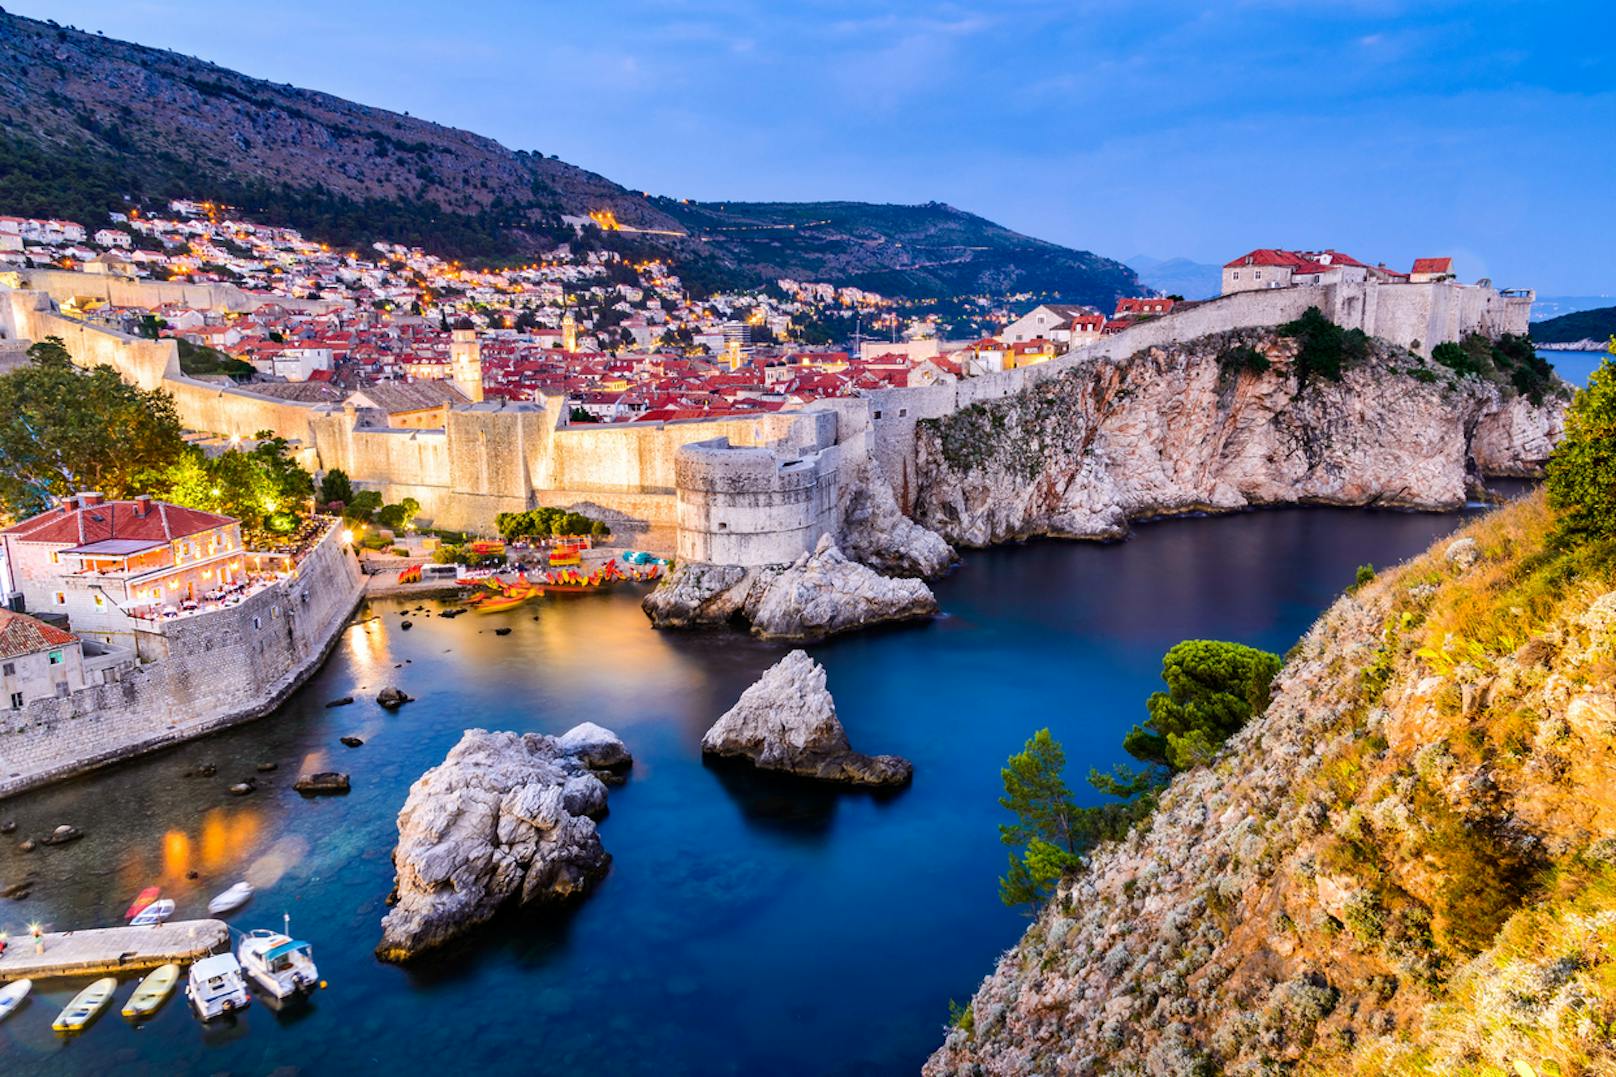 <strong>Platz 1: Dubrovnik, Kroatien!</strong> 36 Touristen pro Einwohner – damit landet die kroatische Hafenstadt Dubrovnik auf Platz eins des Rankings. Vor allem von Juni bis August strömen die Touristen durch die schmalen Gassen der Altstadt, besuchen die Schauplätze der beliebten Serie "Game of Thrones" oder schlendern an der Hafenpromenade entlang.